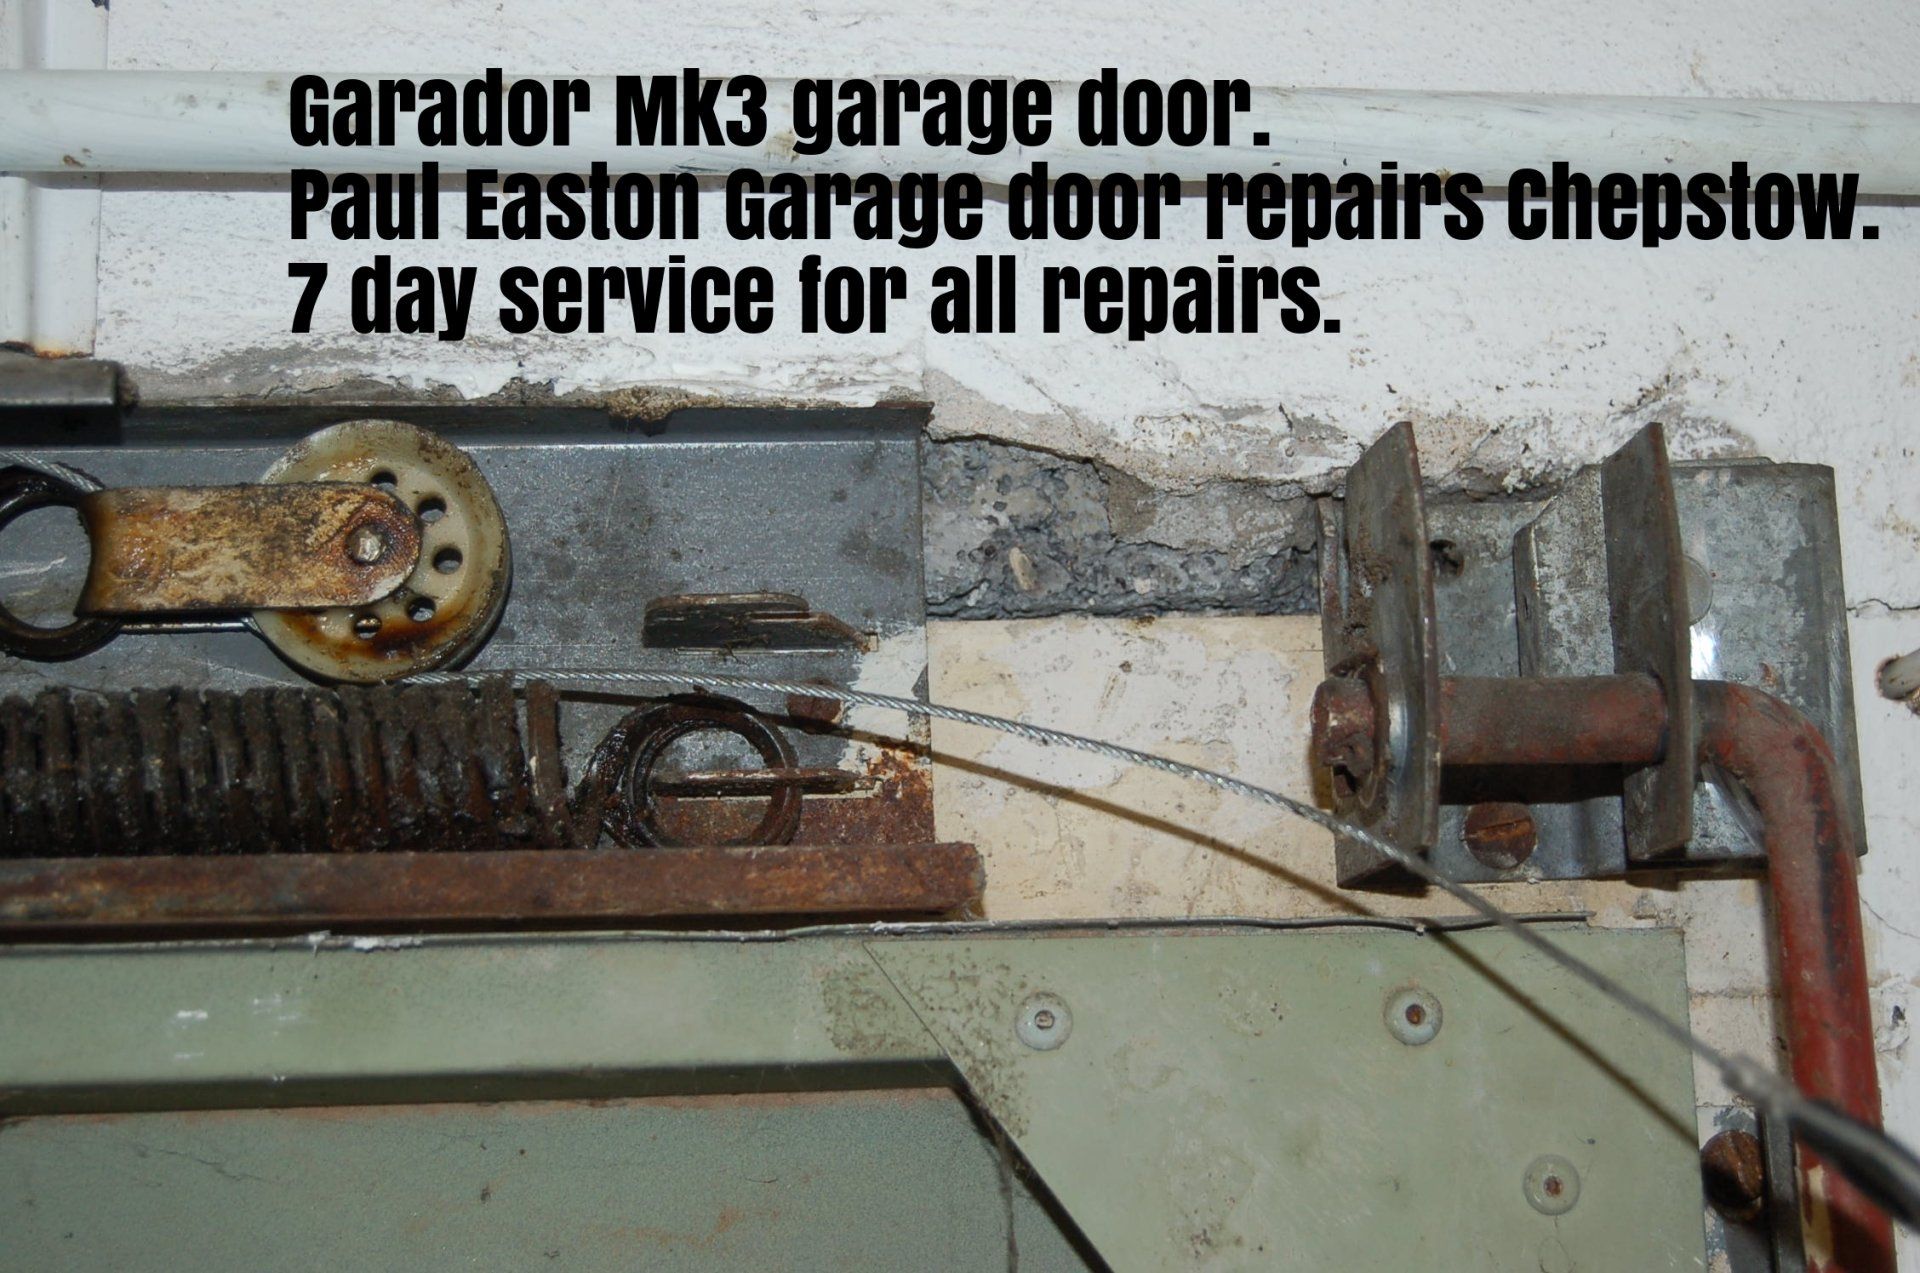 Garador garage door repair Paul Easton Chepstow